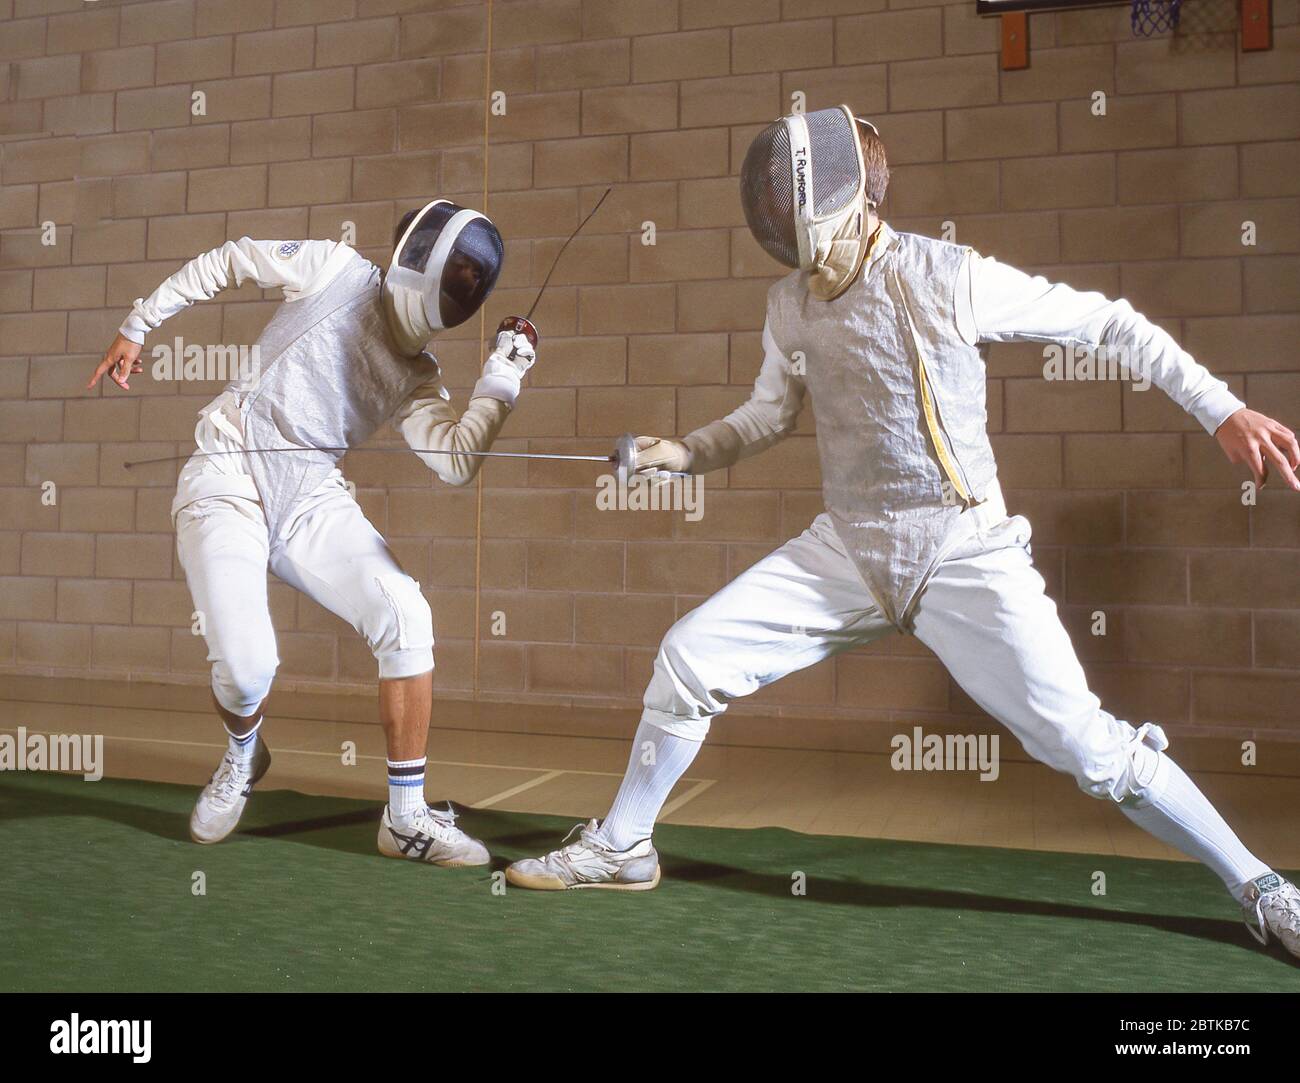 School boys fencing in school gym, Surrey, England, United Kingdom Stock Photo